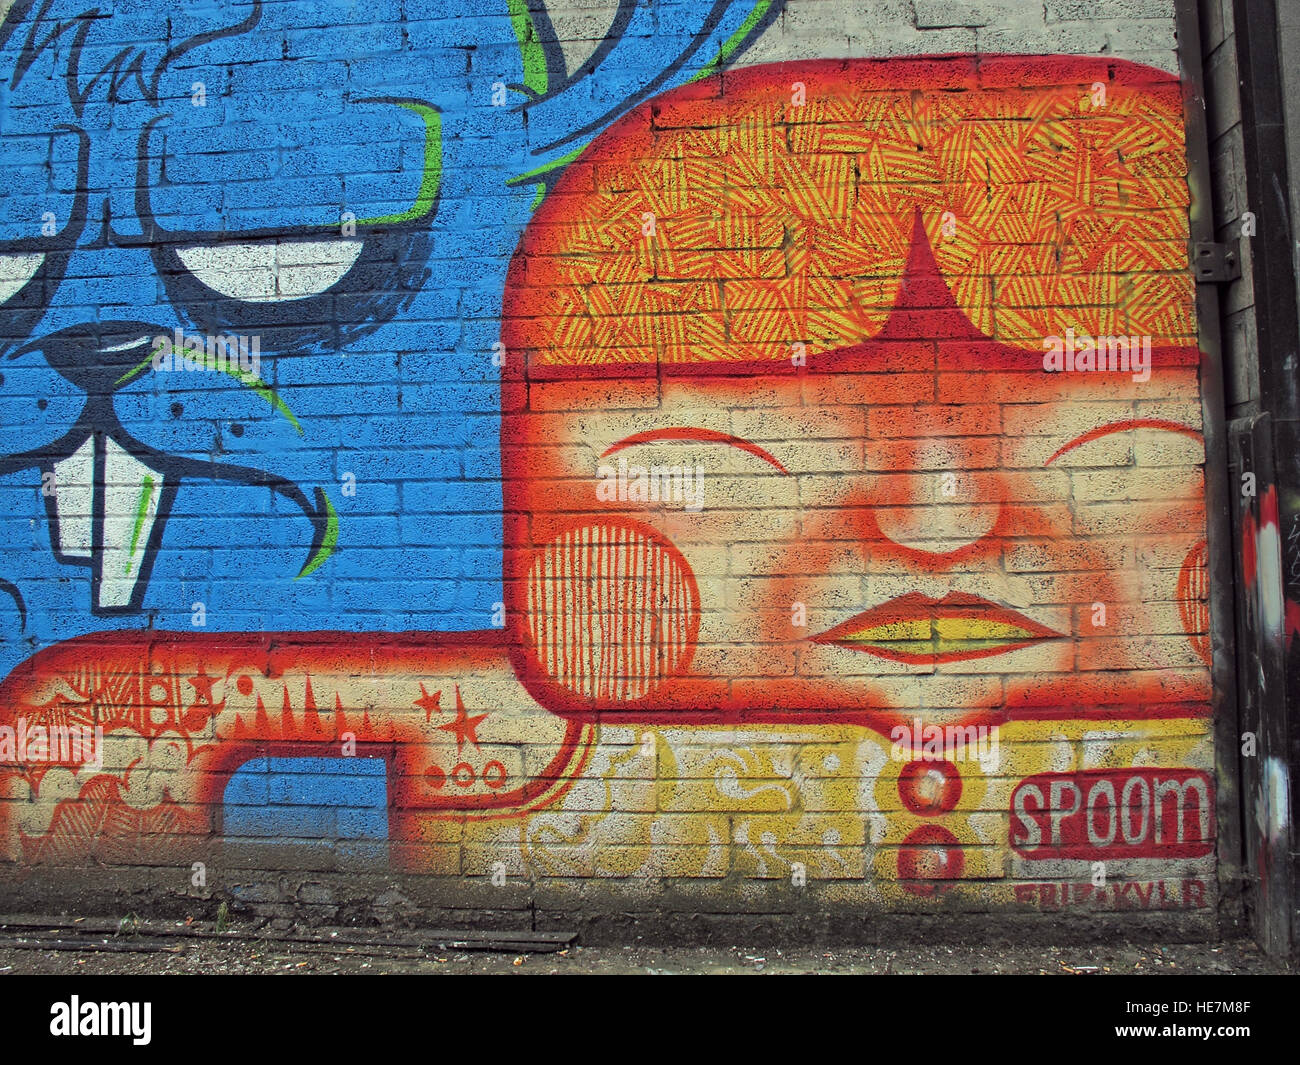 Tag Spoom grafitti,Belfast, Irlanda del Nord, Regno Unito Foto Stock